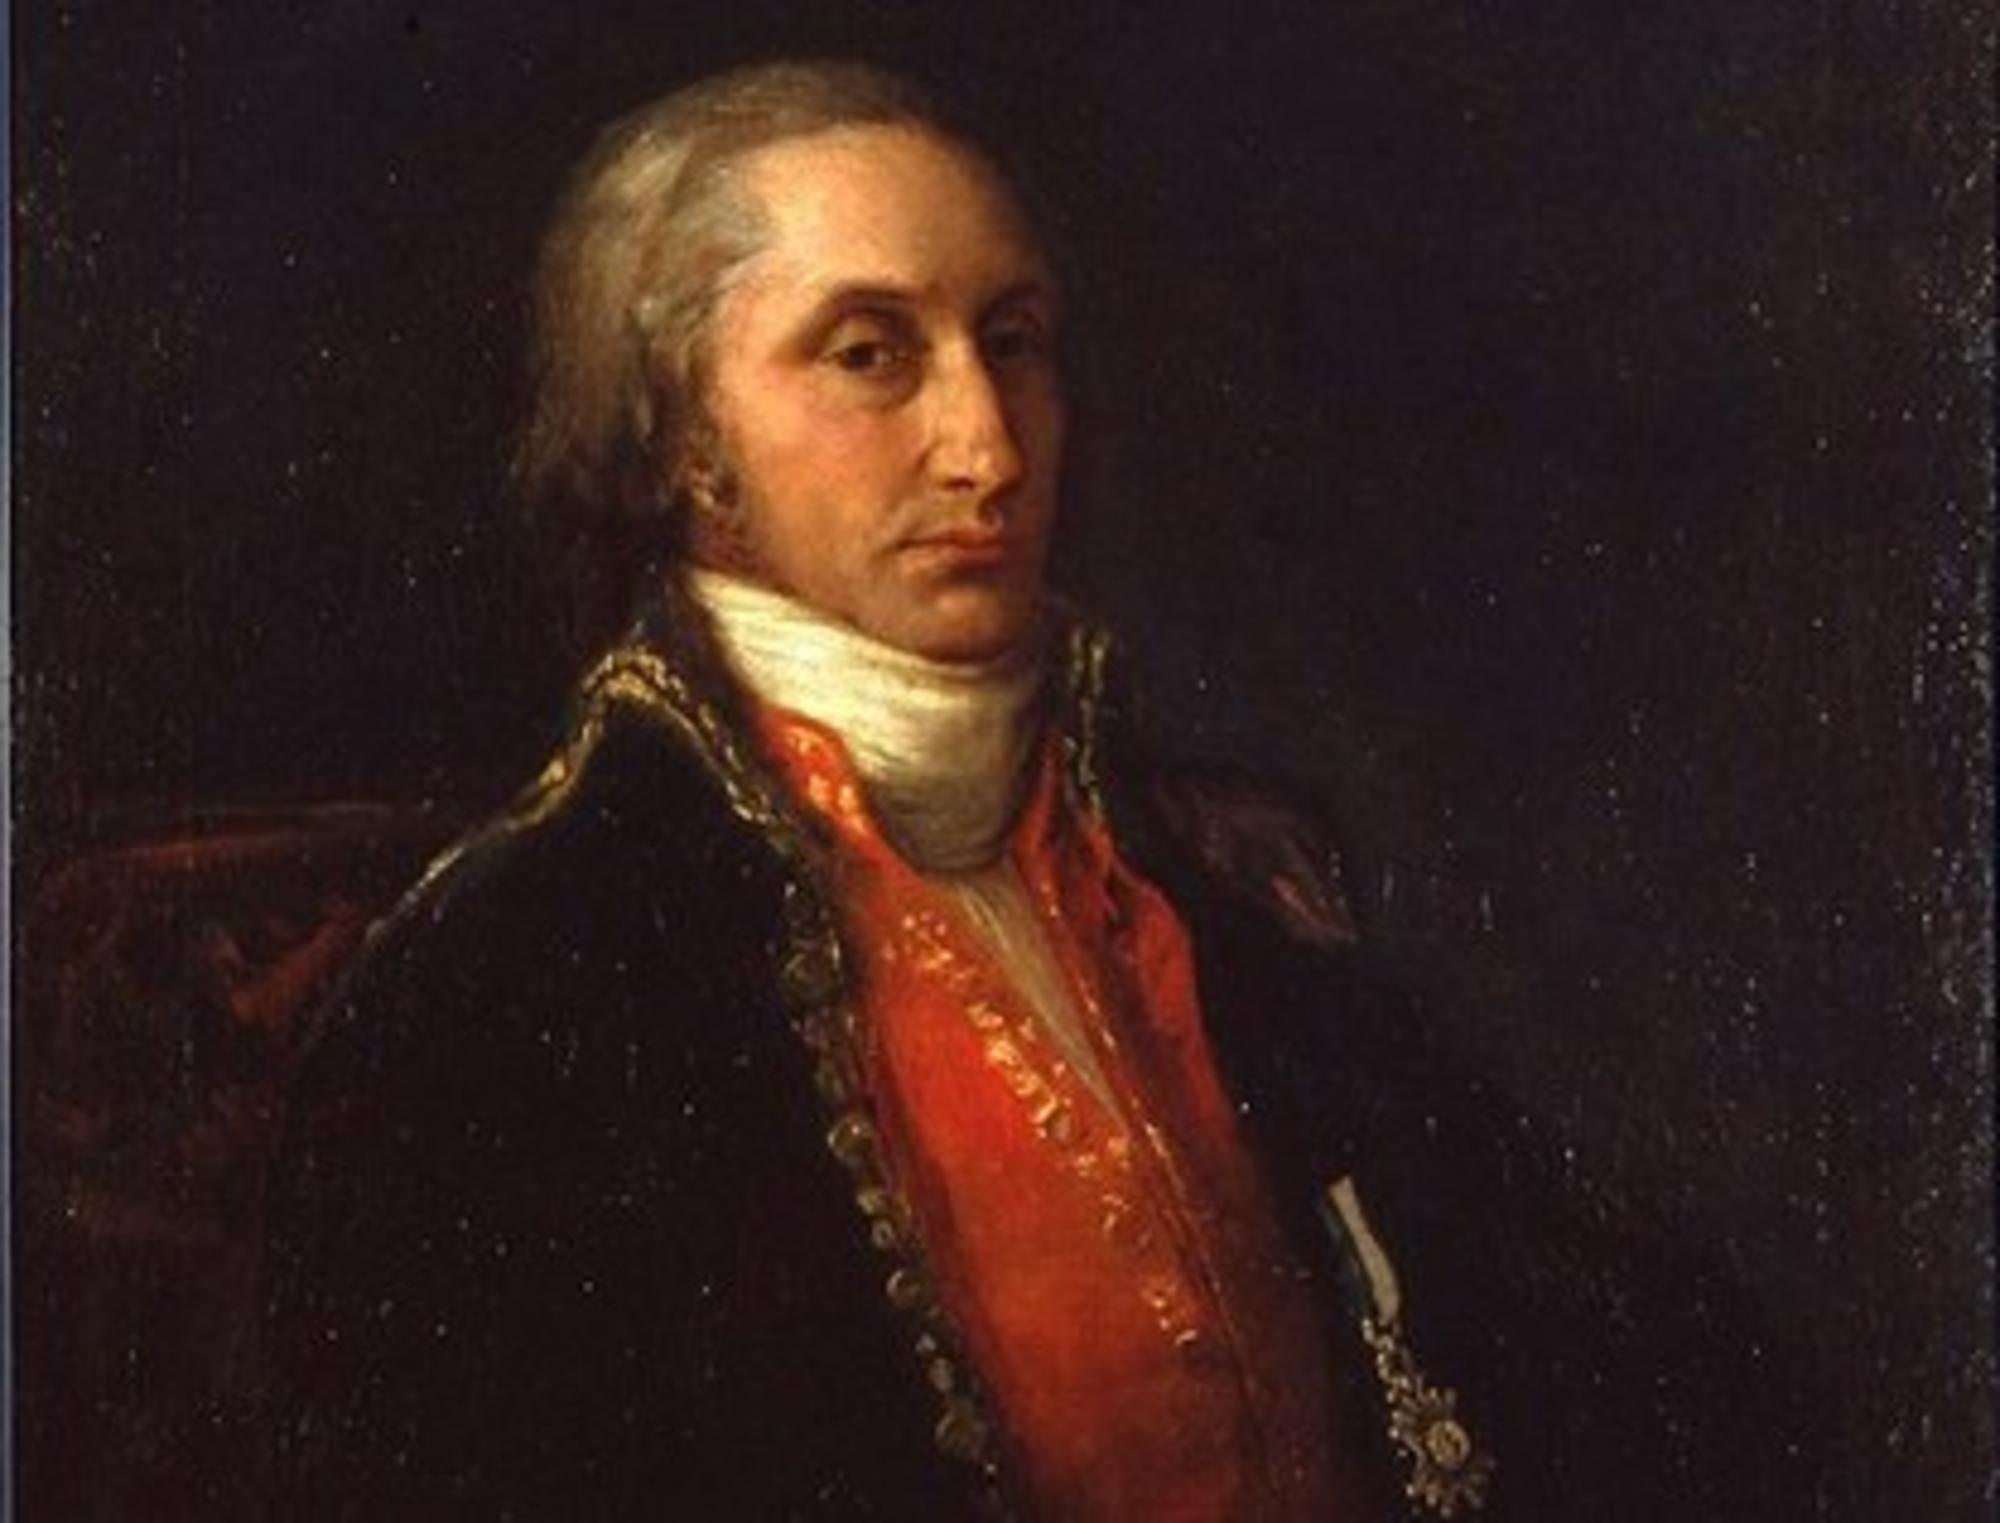 Retrato de Antonio Raimundo Ibañez, Marqués de Sargadelos (Francisco de Goya). Extraido da página web da Fundación Goya